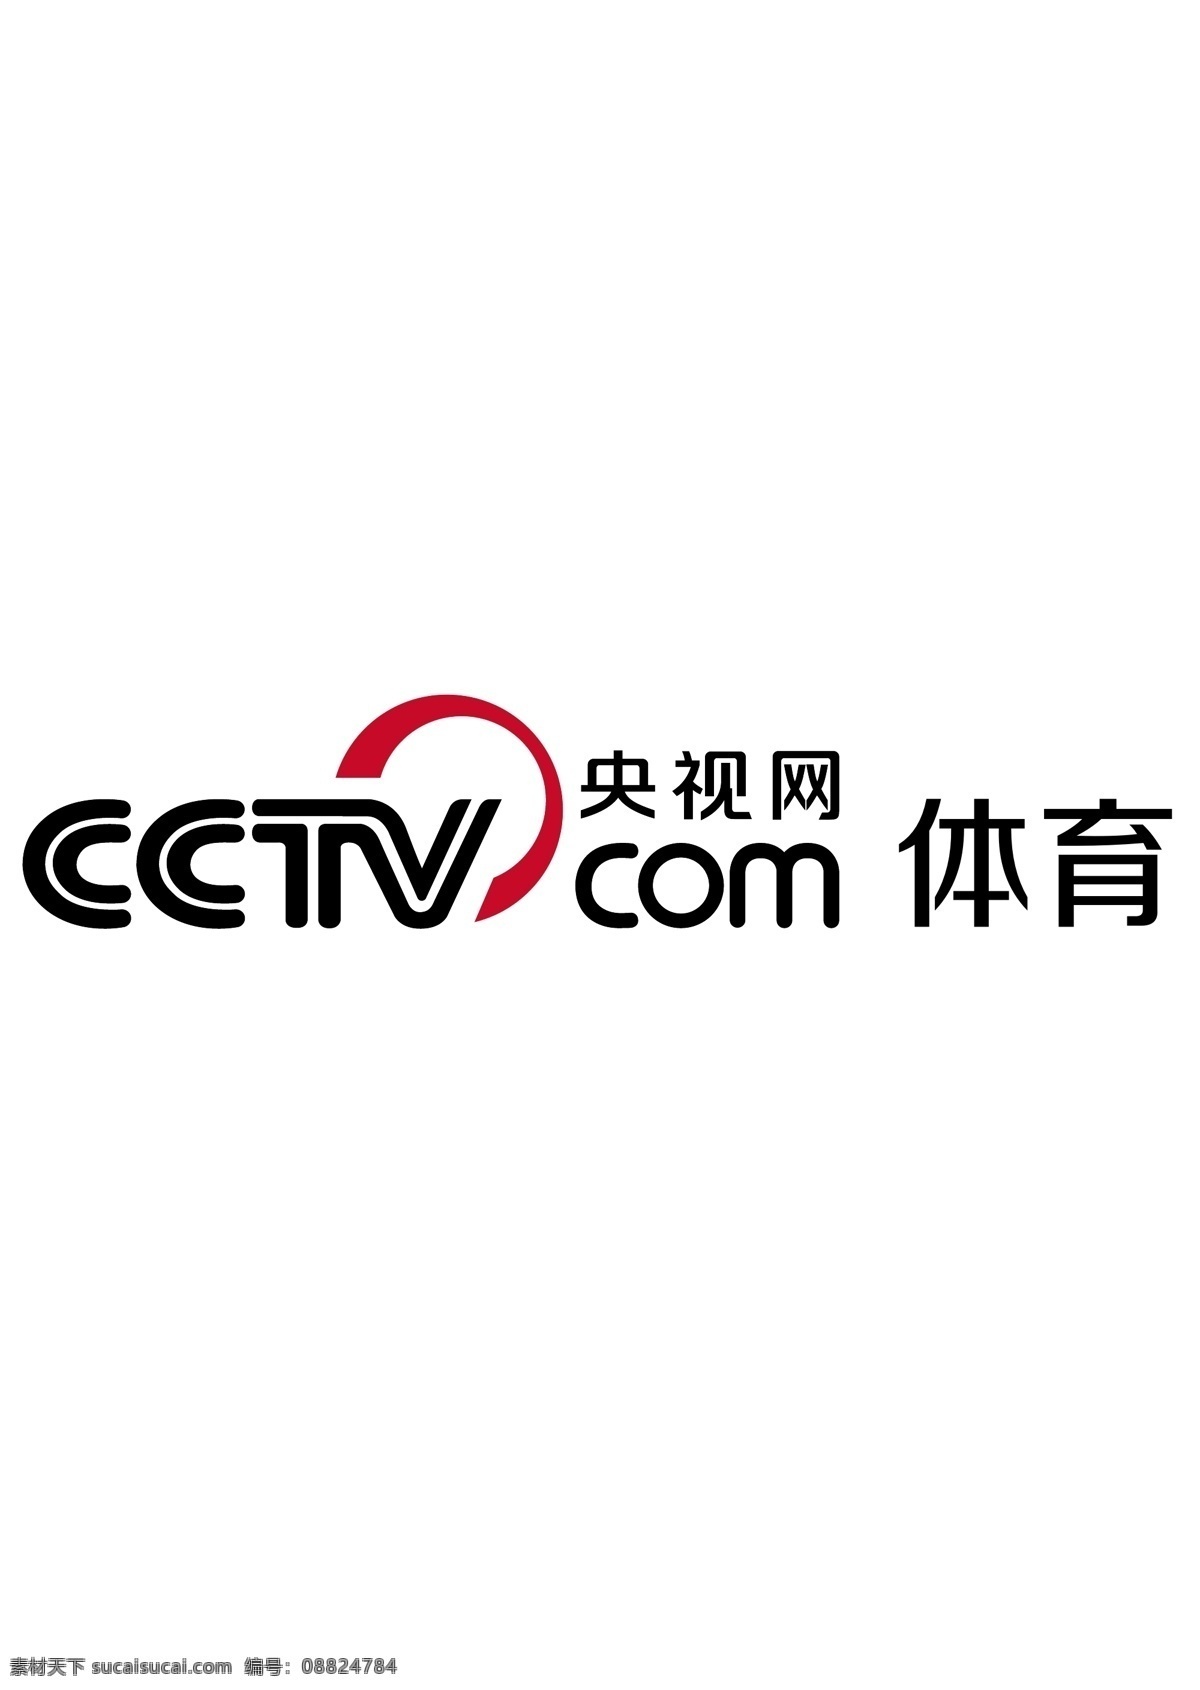 央 视网 体育 徽标 央视网 cctv 央视 中央电视台 cntv 网络电视台 媒体 logo设计